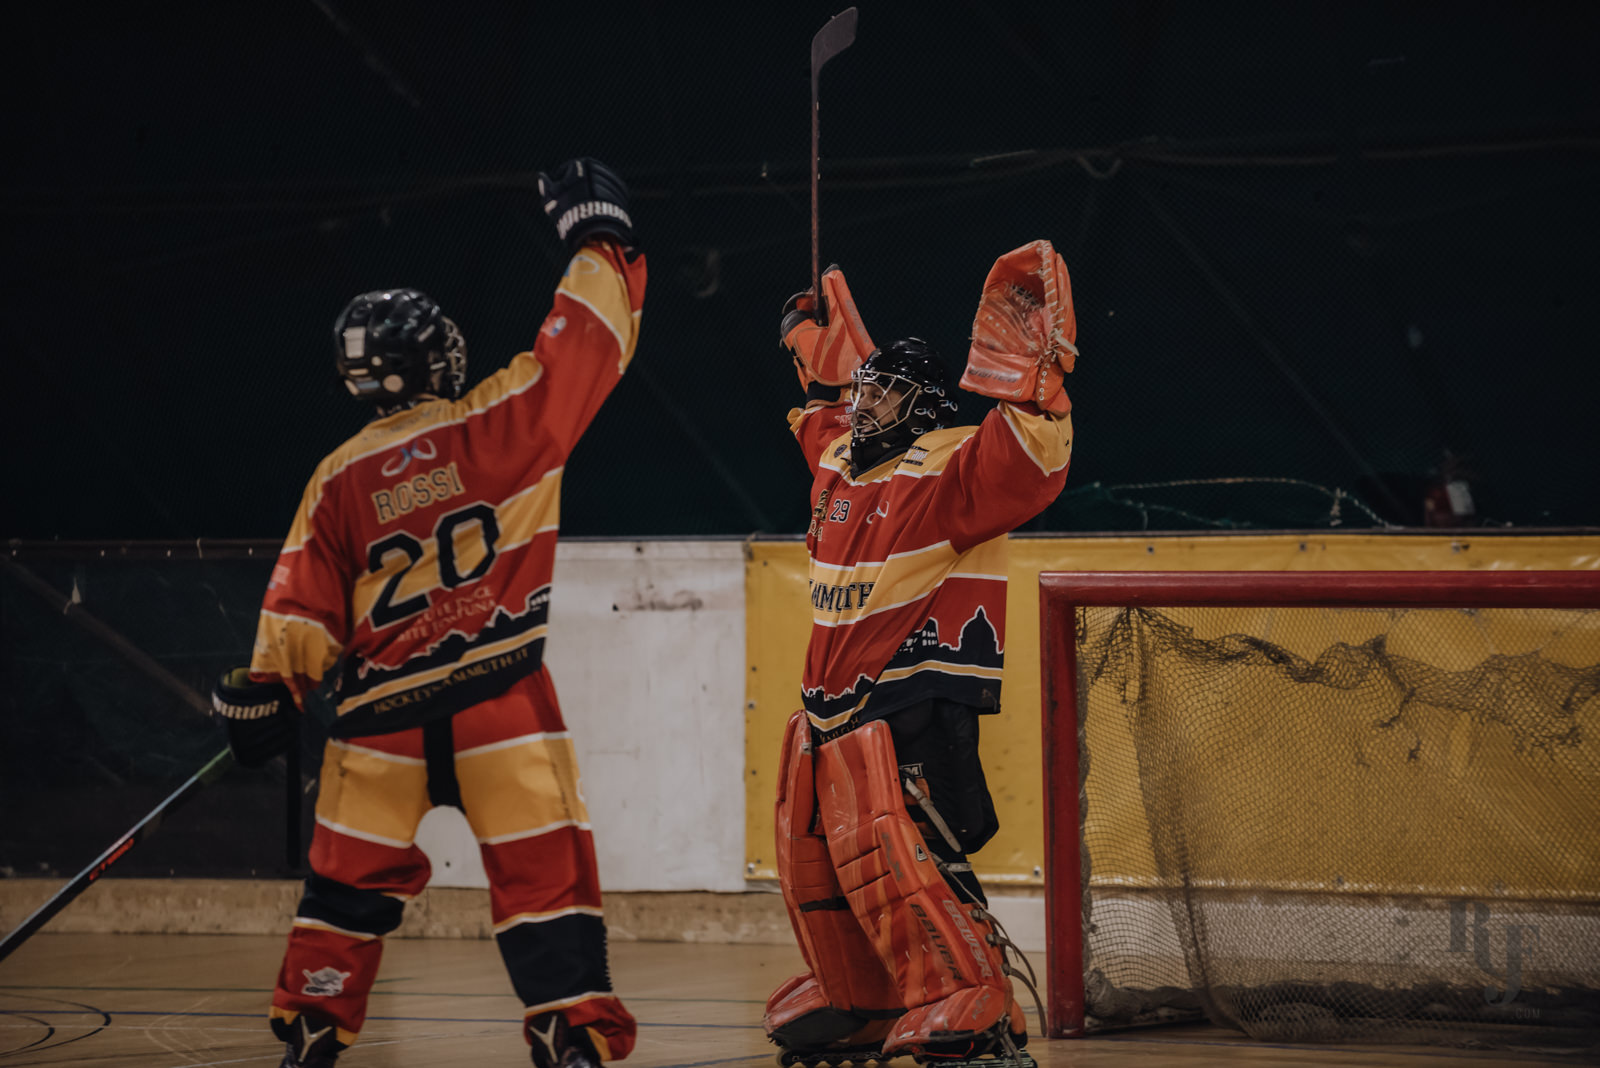 hockey roma, inline hockey roma, pattinaggio roma, rita foldi photo, sports photography, hockey roma, mammuth hockey roma